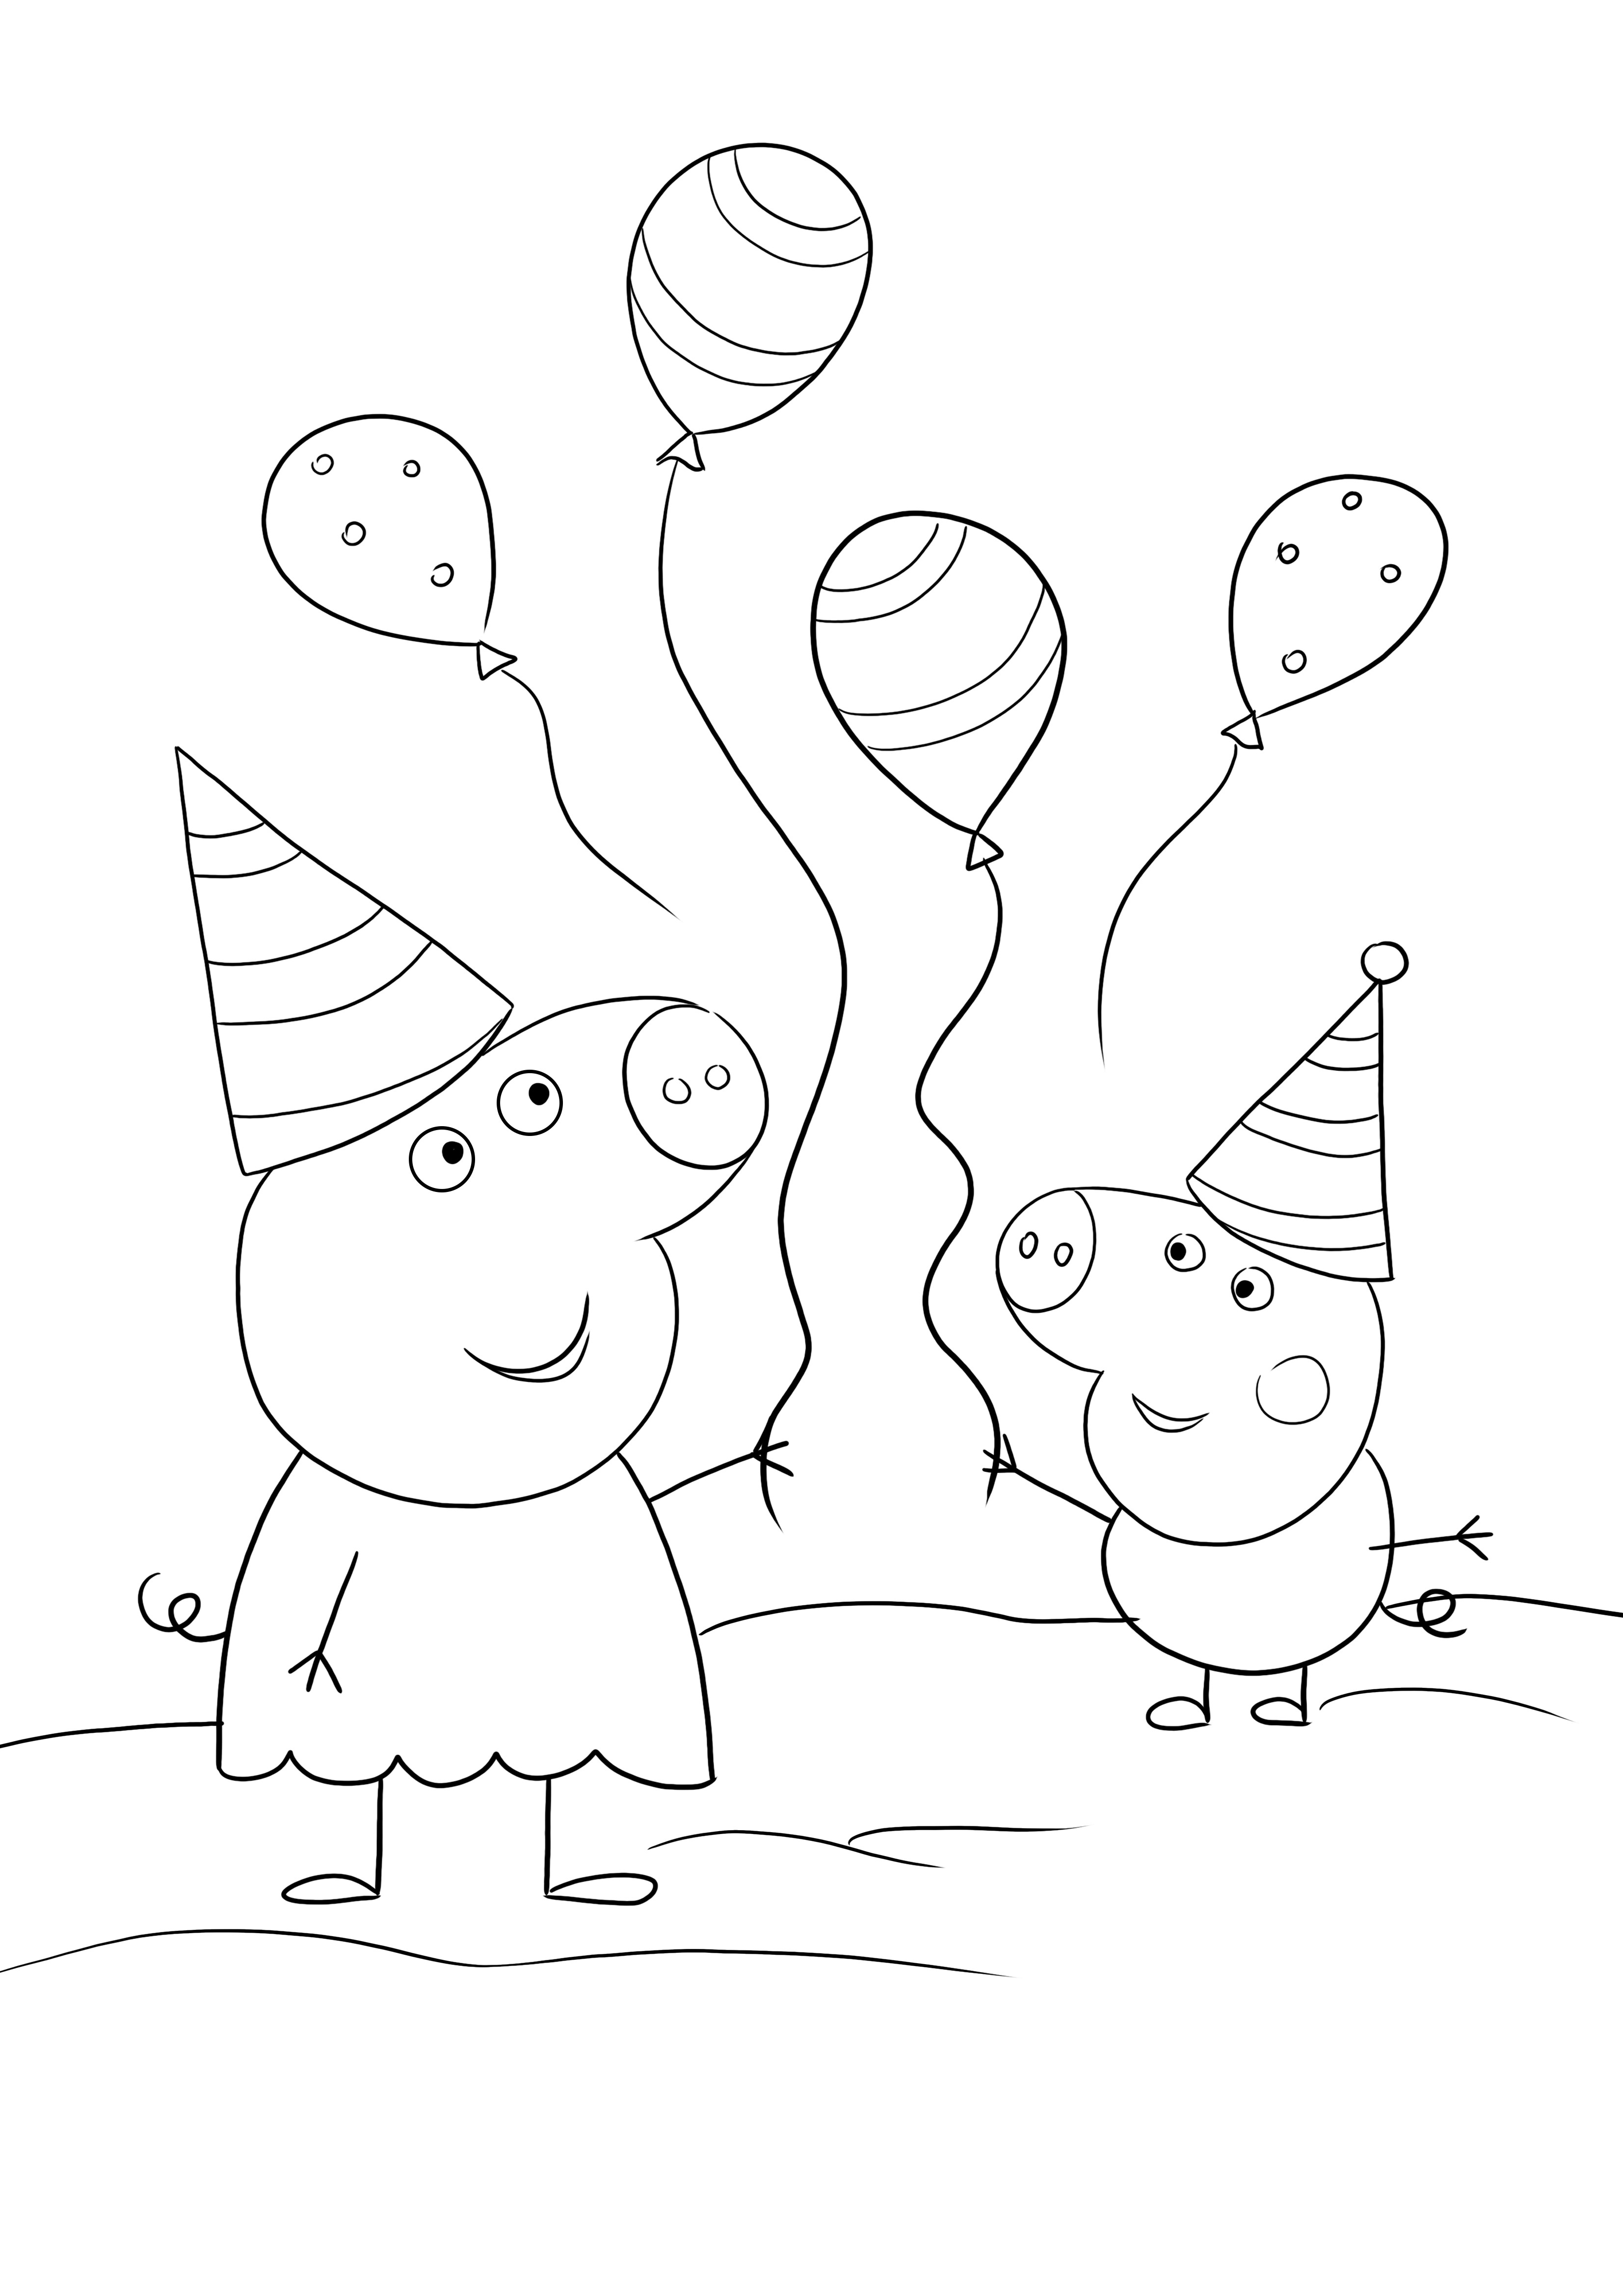 Peppa&George va à une fête d'anniversaire - un coloriage drôle et gratuit à imprimer et colorier